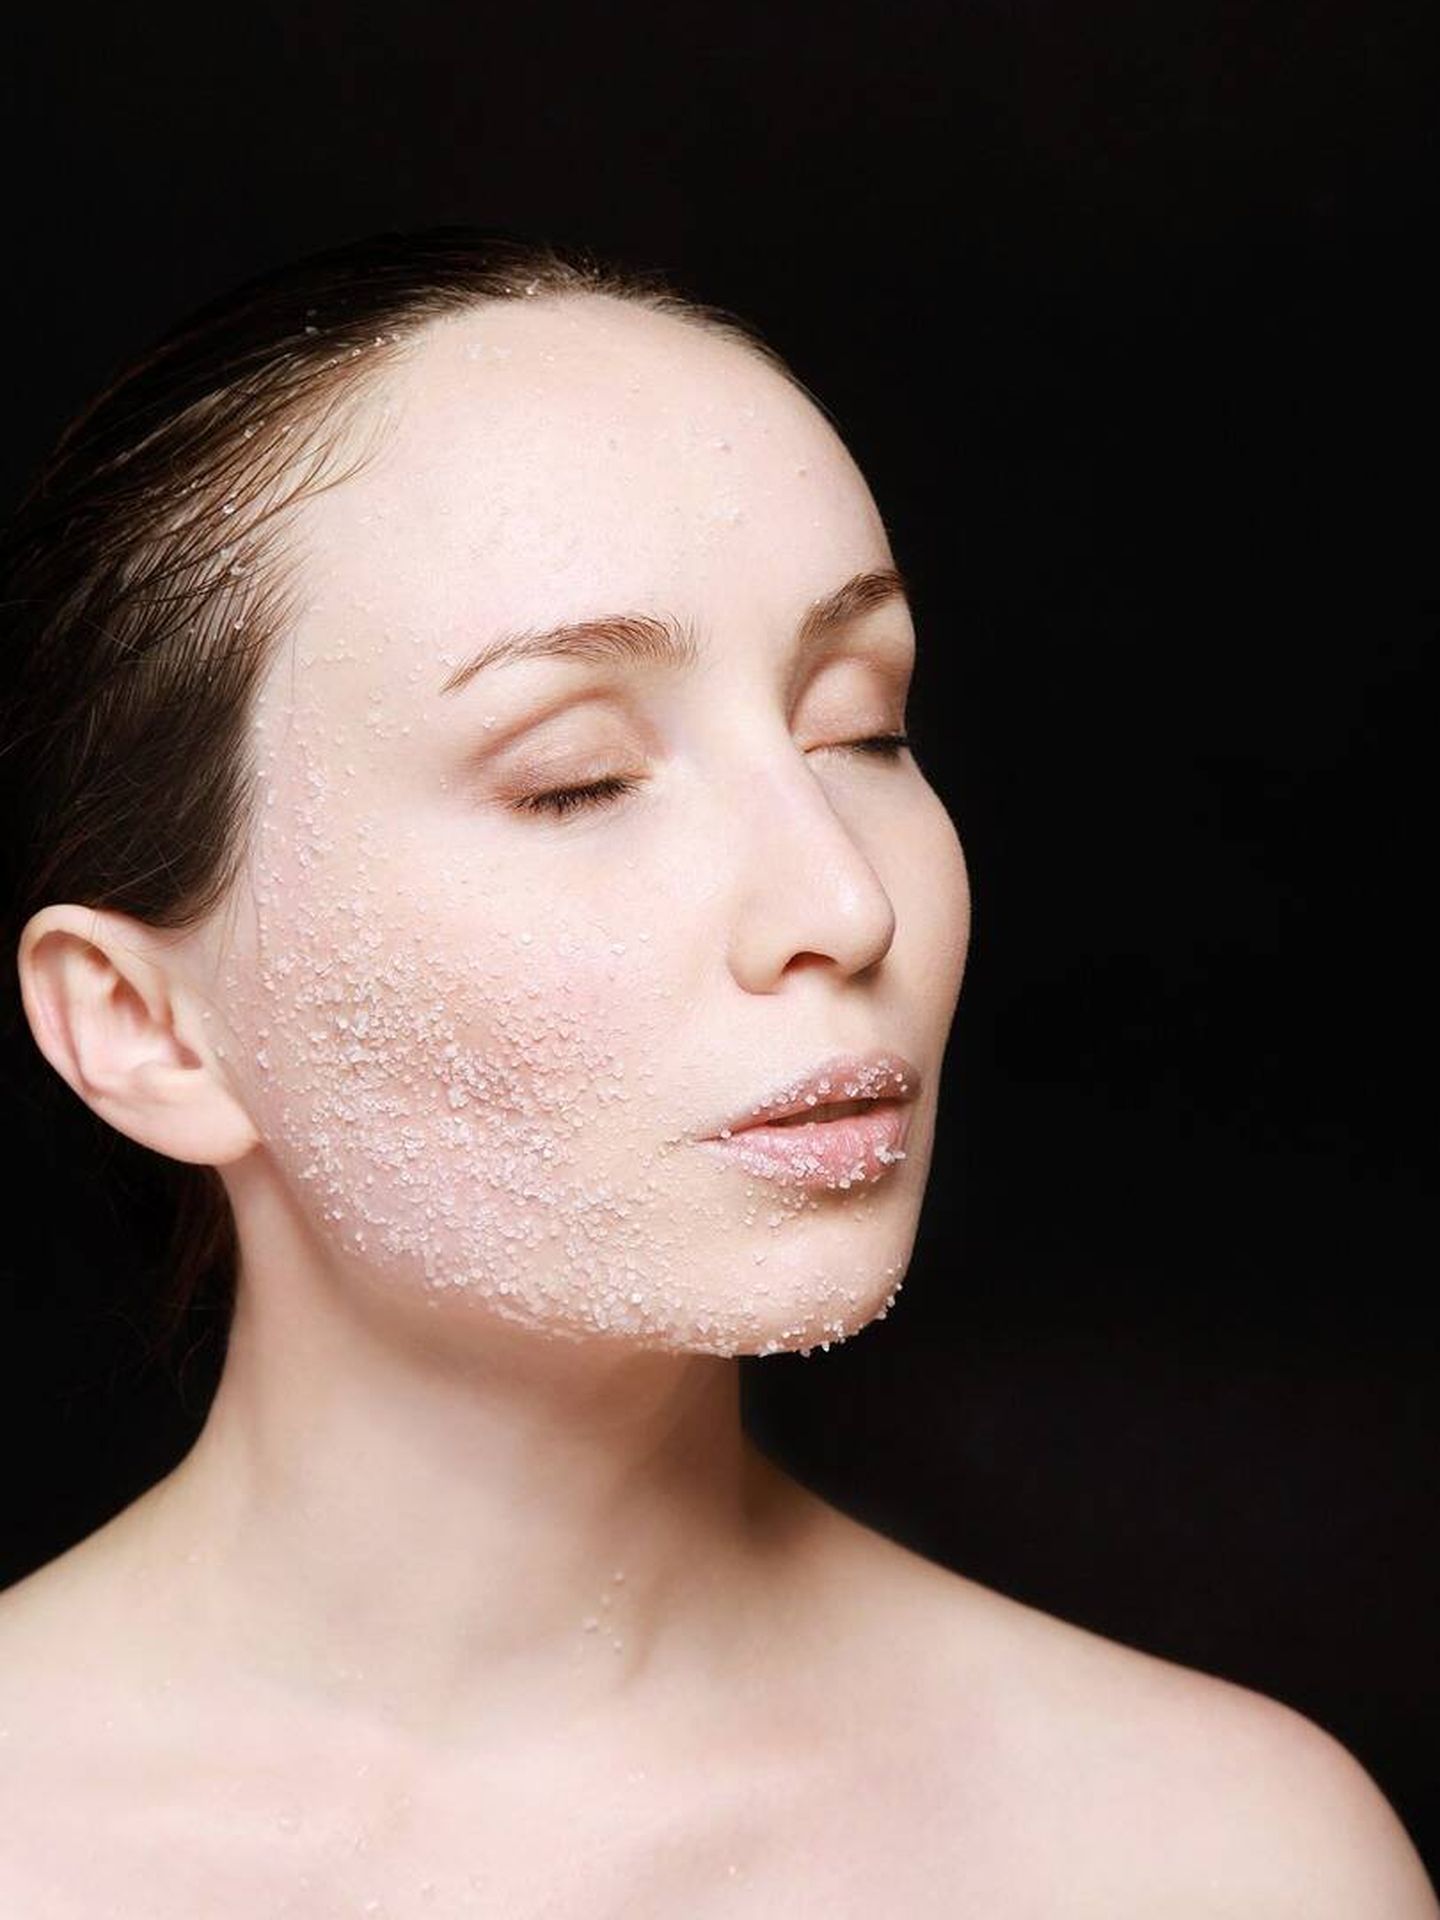 La exfoliación es pieza clave para unificar la piel. (Pixabay)